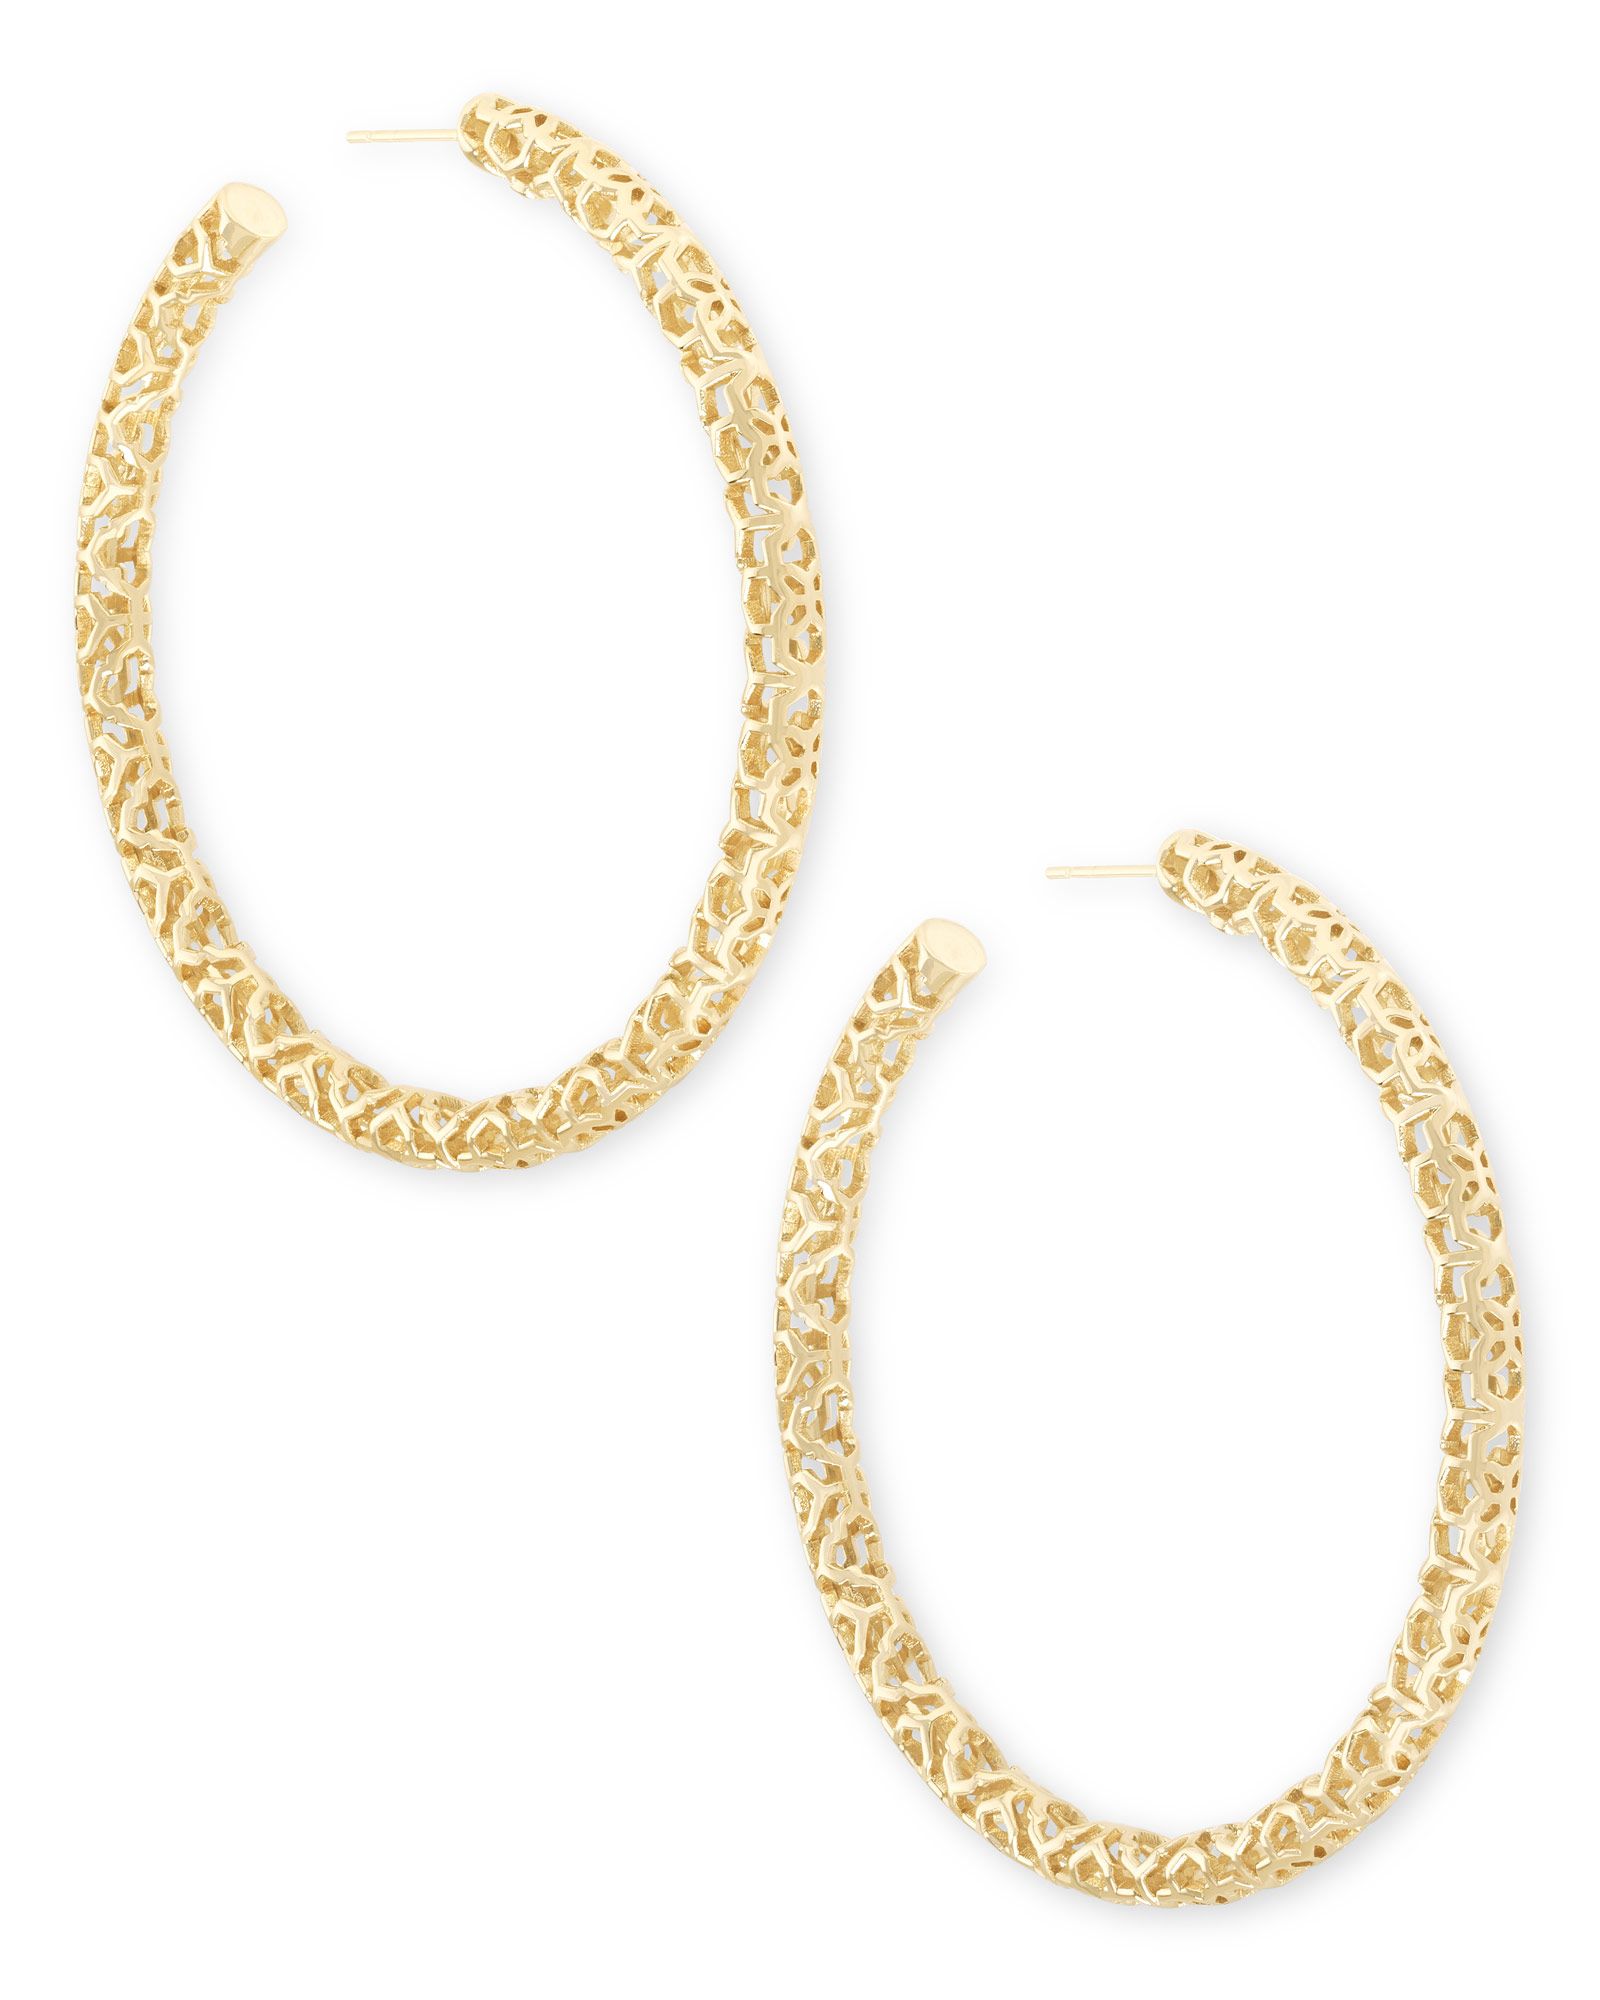 Maggie Hoop Earrings in Gold Filigree | Kendra Scott | Kendra Scott